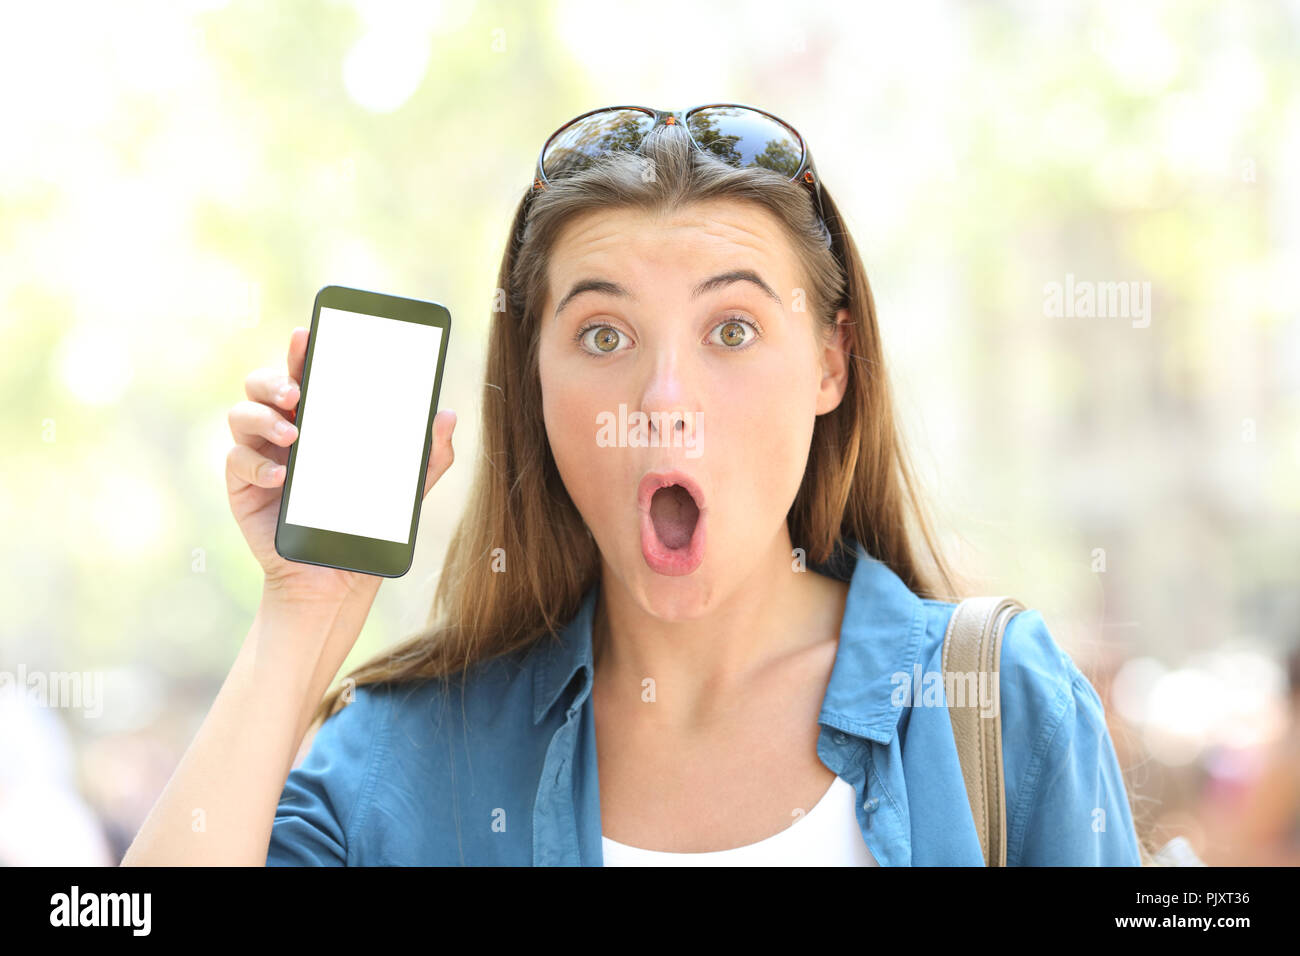 Vue avant, portrait d'une jeune fille surprise montrant un écran de téléphone à puce vierges à l'extérieur dans la rue Banque D'Images